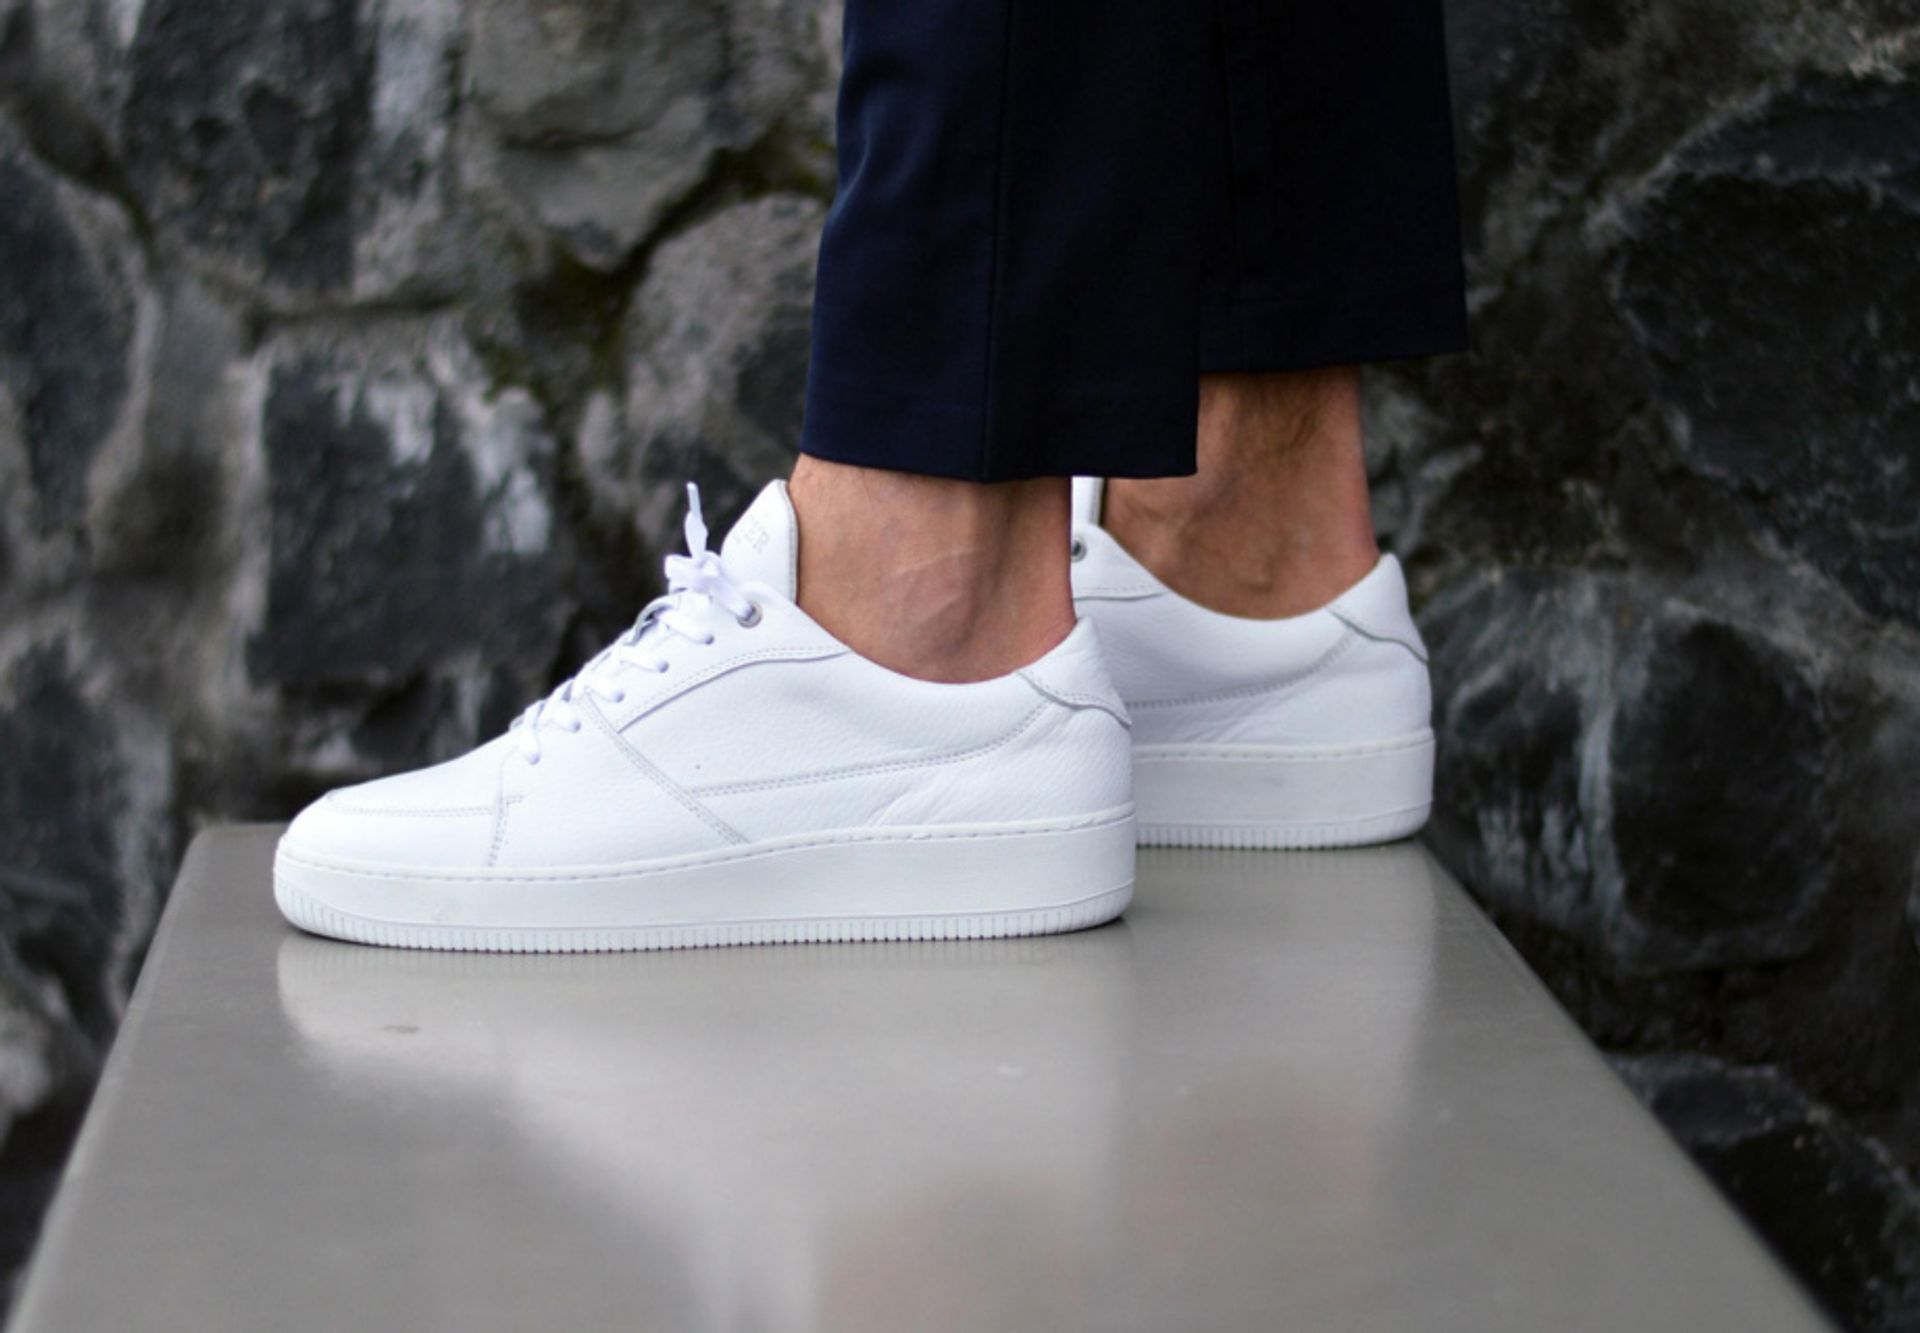 Moreel Verhoogd Meander 7 x hele vette witte sneakers voor de zomer 2016 | Gewoonvoorhem